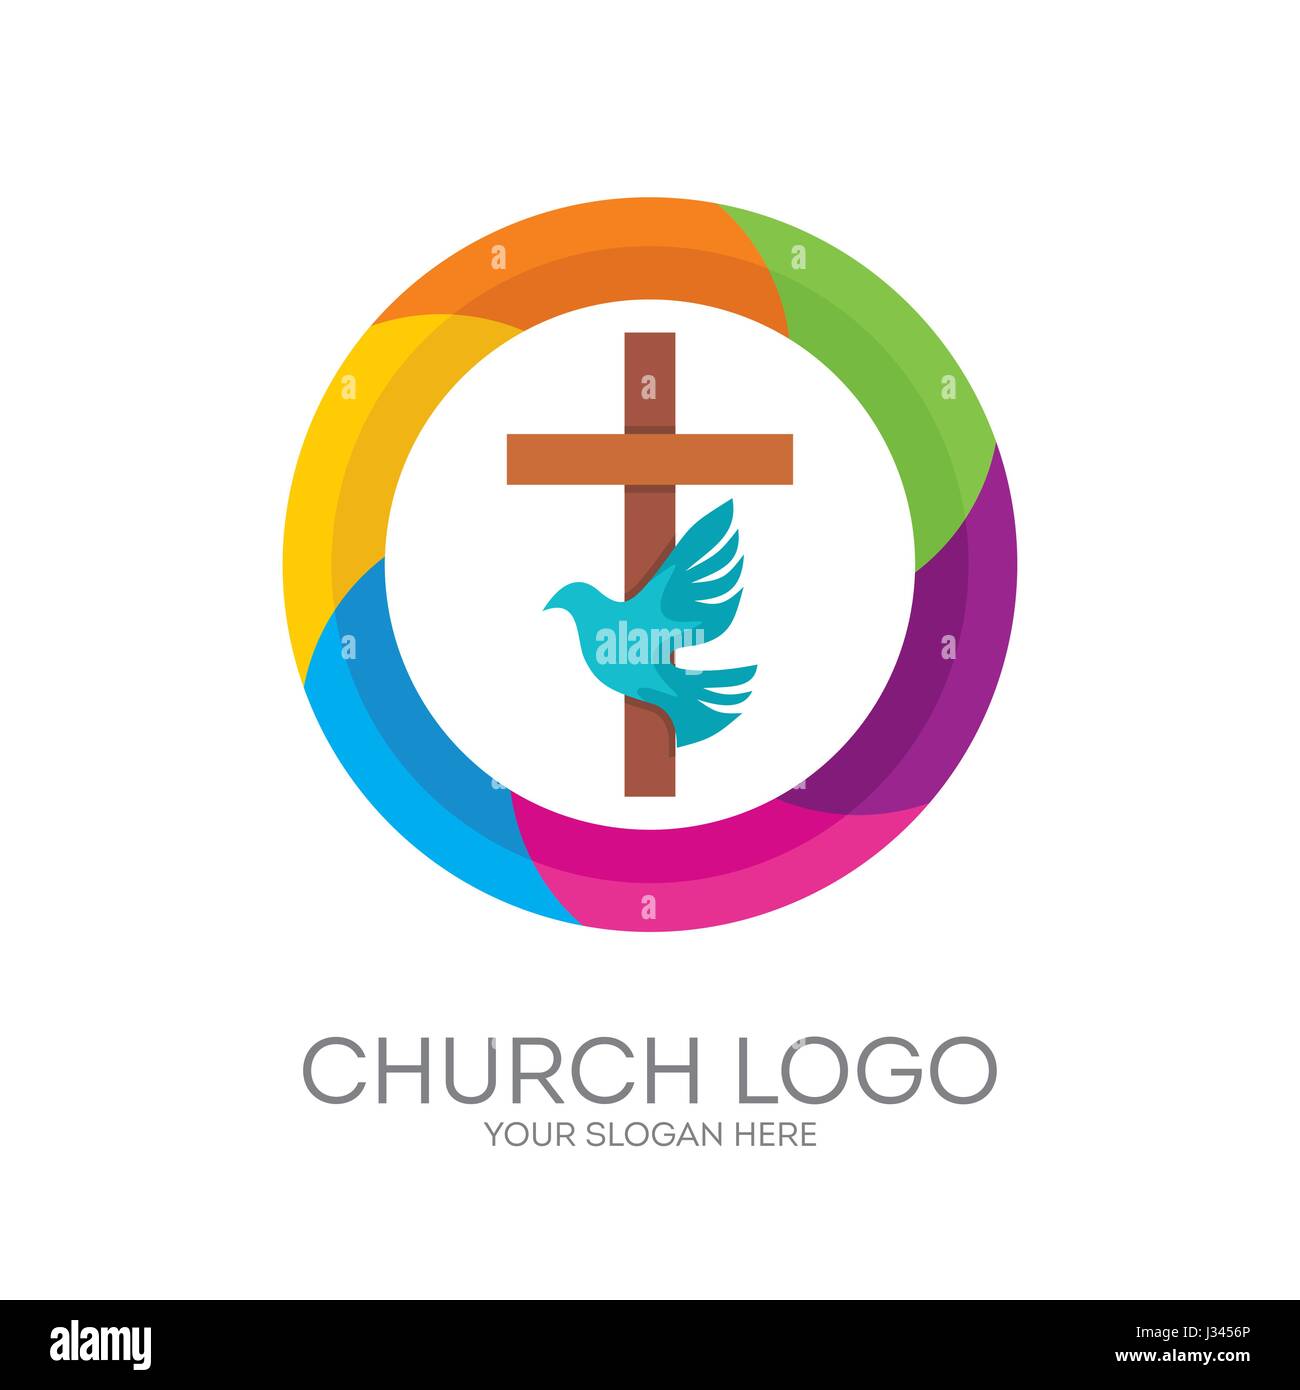 Logo der Kirche. Christliche Symbole. Das Kreuz Jesu, der Heilige Geist - Taube. Stock Vektor